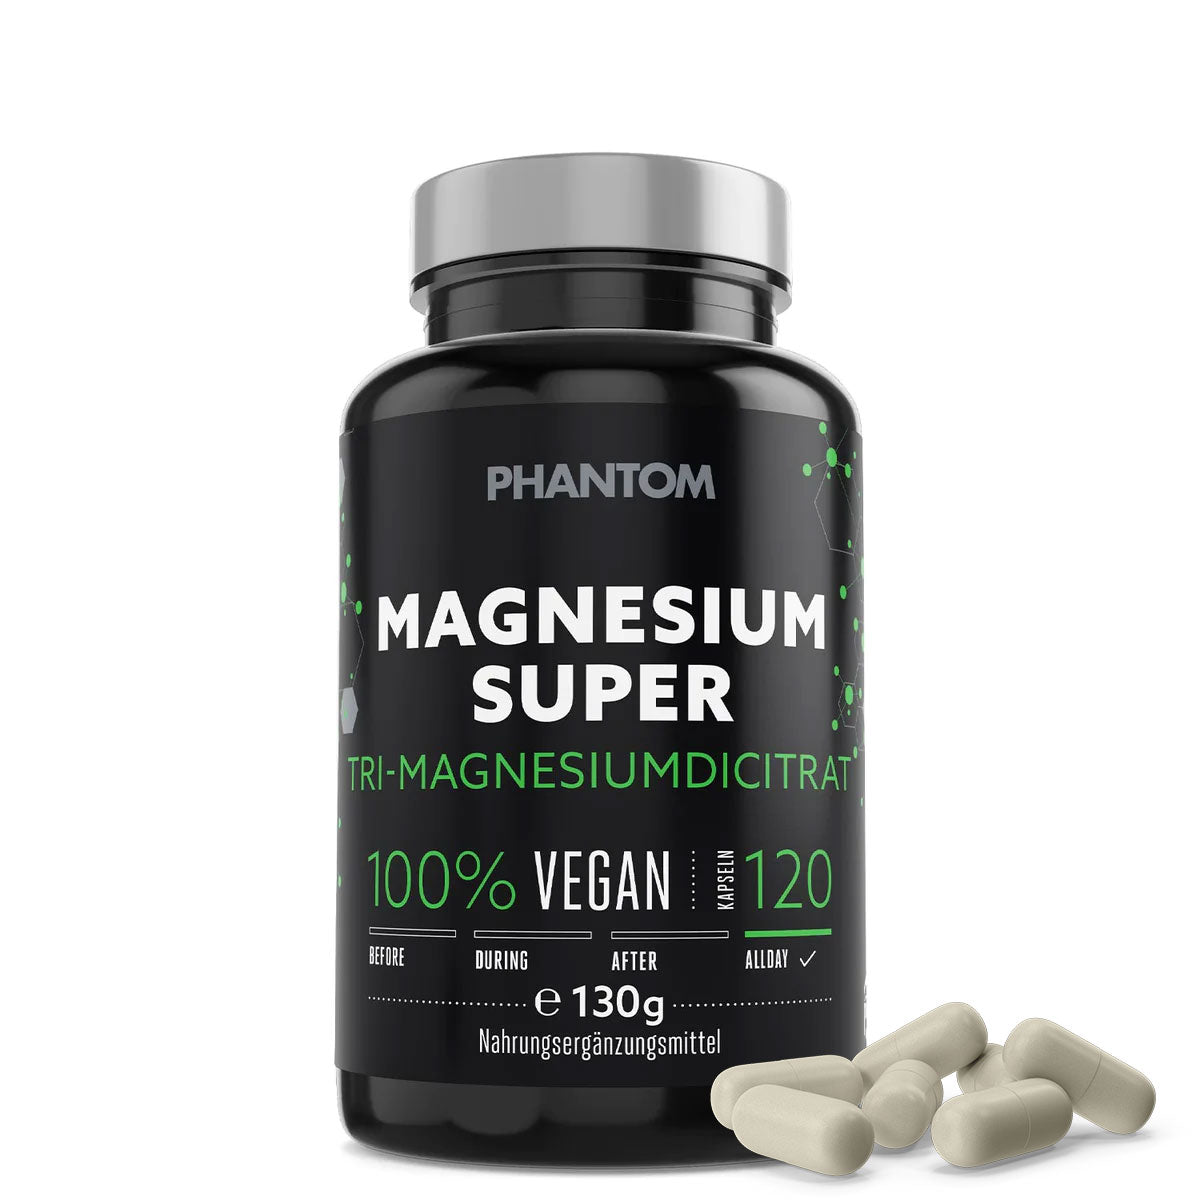 Phantom Magnesium Super cápsulas para una mejor regeneración en las artes marciales.